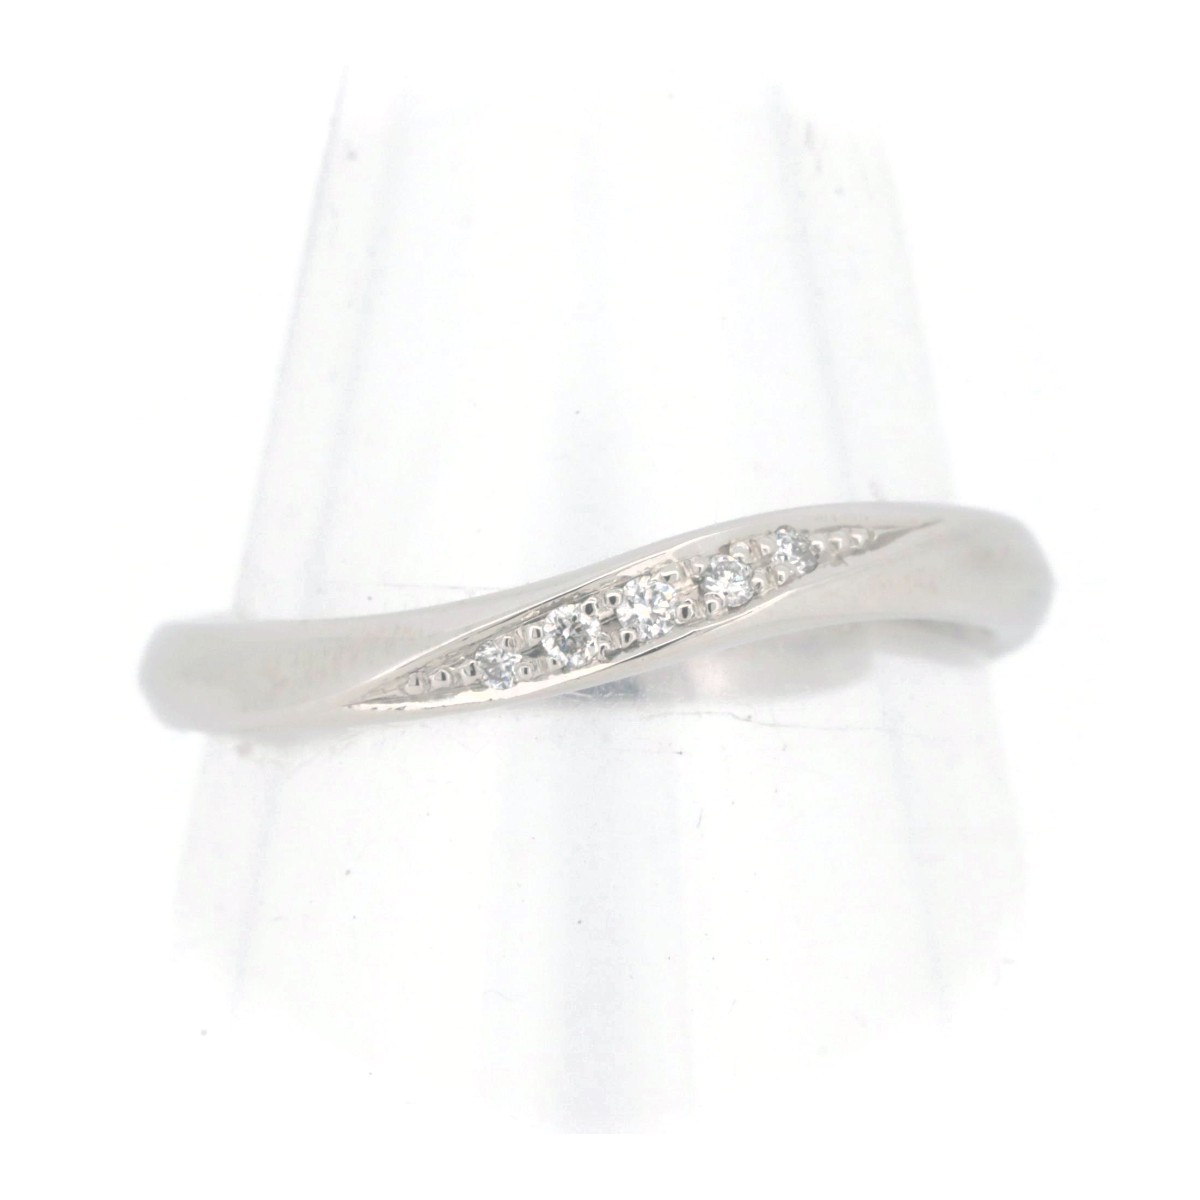 銀座ダイヤモンドシライシ ダイヤモンド リング 指輪 0.03ct 8号 PT950(プラチナ) 質屋出品